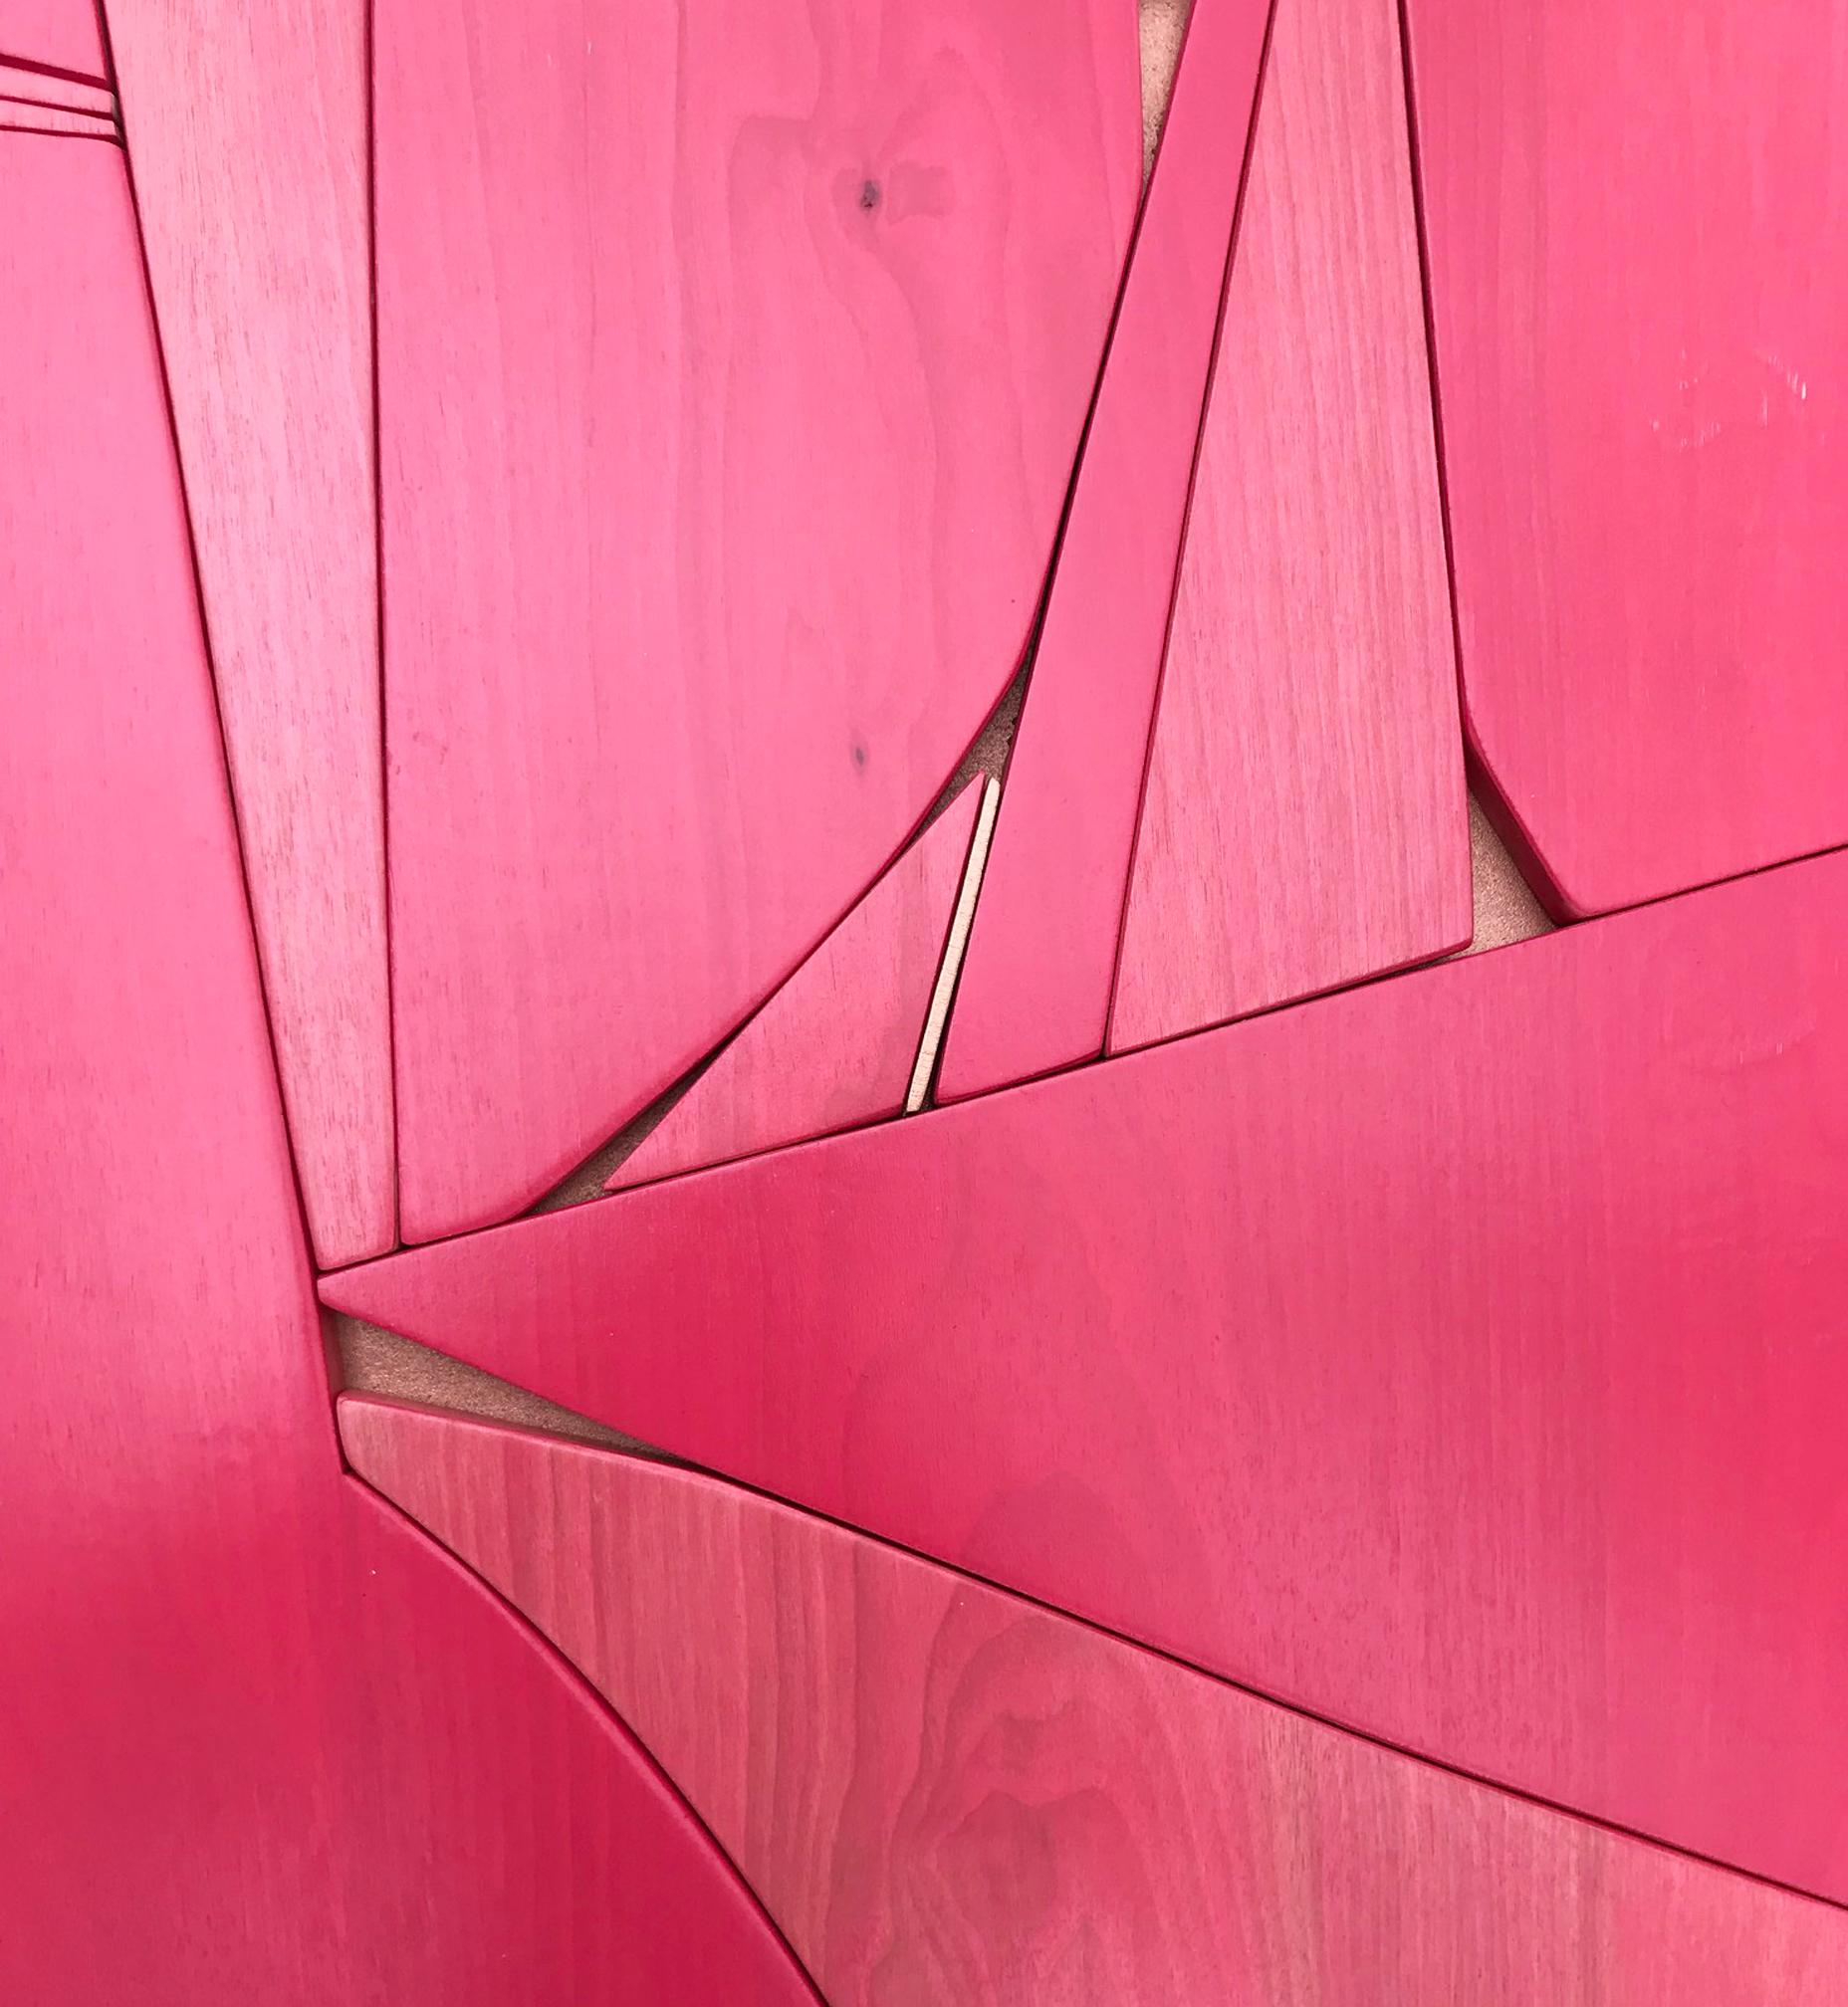 Lippenstiftrote (moderne abstrakte Wandskulptur im minimalistischen geometrischen Design aus rotem Holz) – Sculpture von Scott Troxel